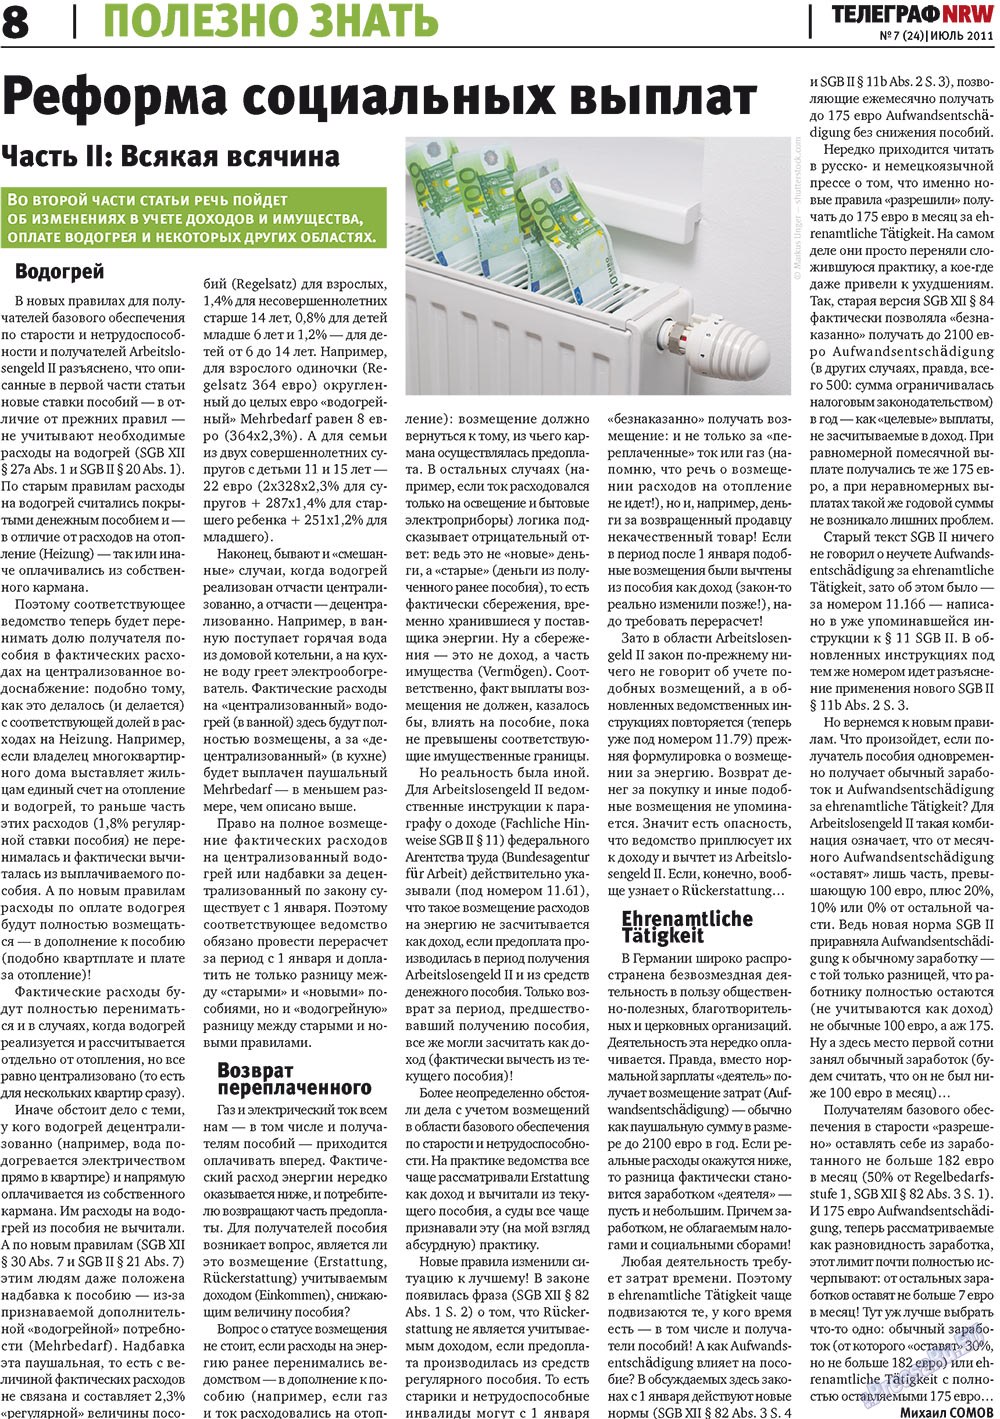 Телеграф NRW (газета). 2011 год, номер 7, стр. 8